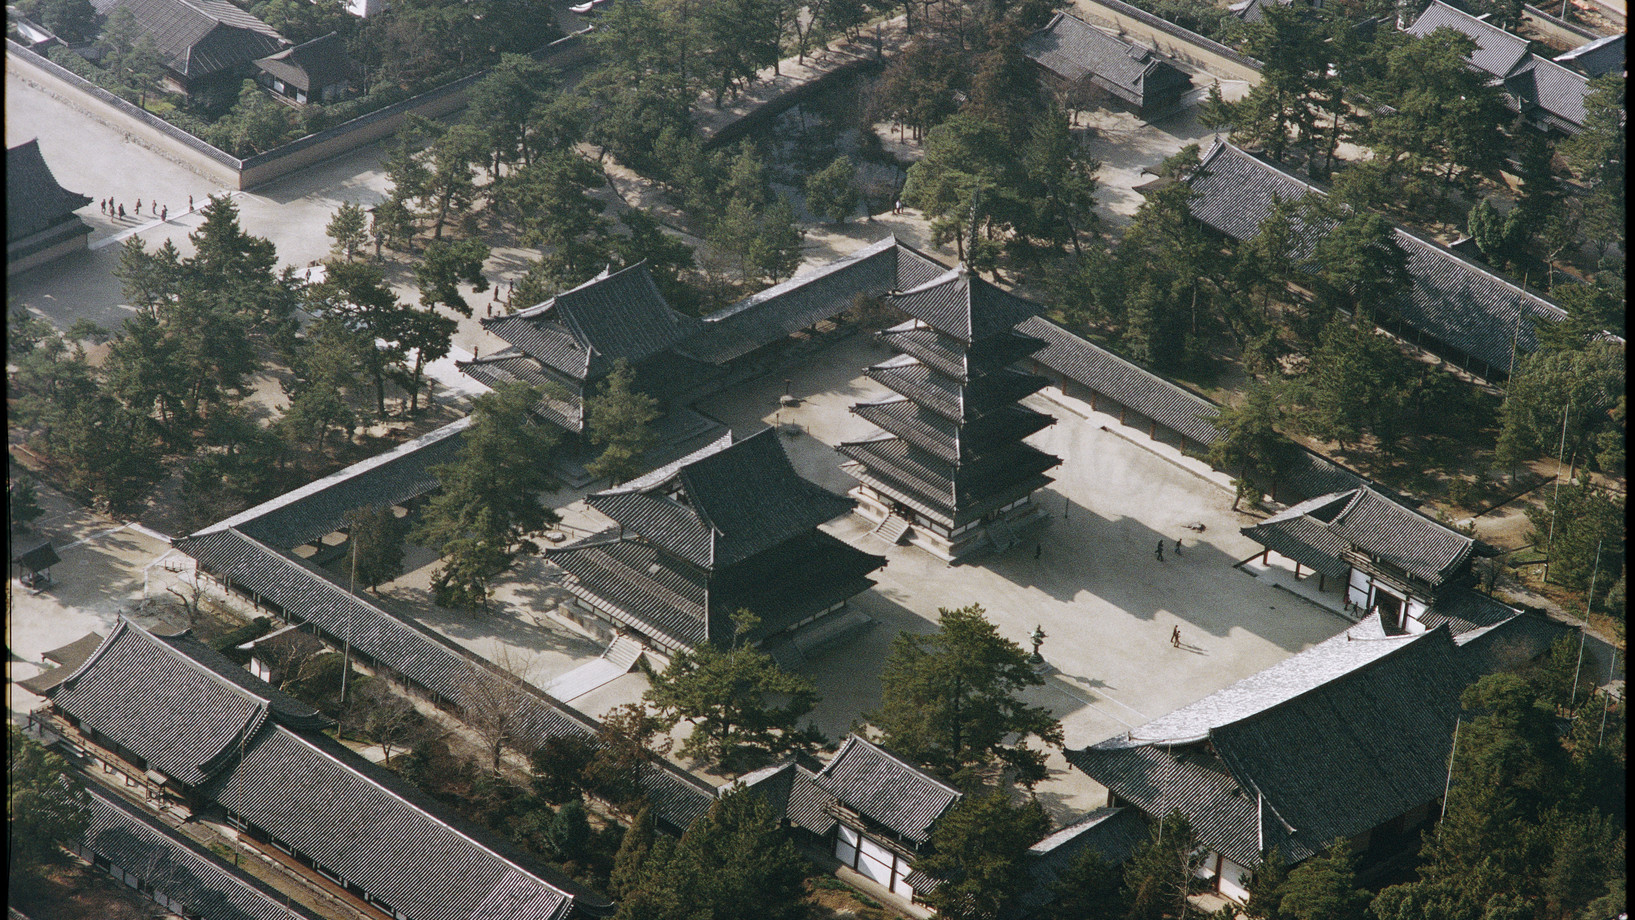  Der Tempelbezirk des Horyu-ji bei Nara, Hauptsitz der budhistischen Shotoku-Sekte, enthält die ältesten Holzbauten Japans und der Welt.

Das Flugbild zeigt den von einem überdachten Wandelgang umgebenen Tempelhof des Westbezirks, mit der fünfstöckigen Pagode (erbaut 607) und der Goldenen Halle (Kondo). Die Tempelanlagen bei und in Nara, unvergleichliche Zeugnisse asiatischer Sakralarchitektur und ein Nonplusultra des Holzbaus, zogen mit erstaunlicher Verspätung ins Pantheon des Welterbes ein: der Horyu-…